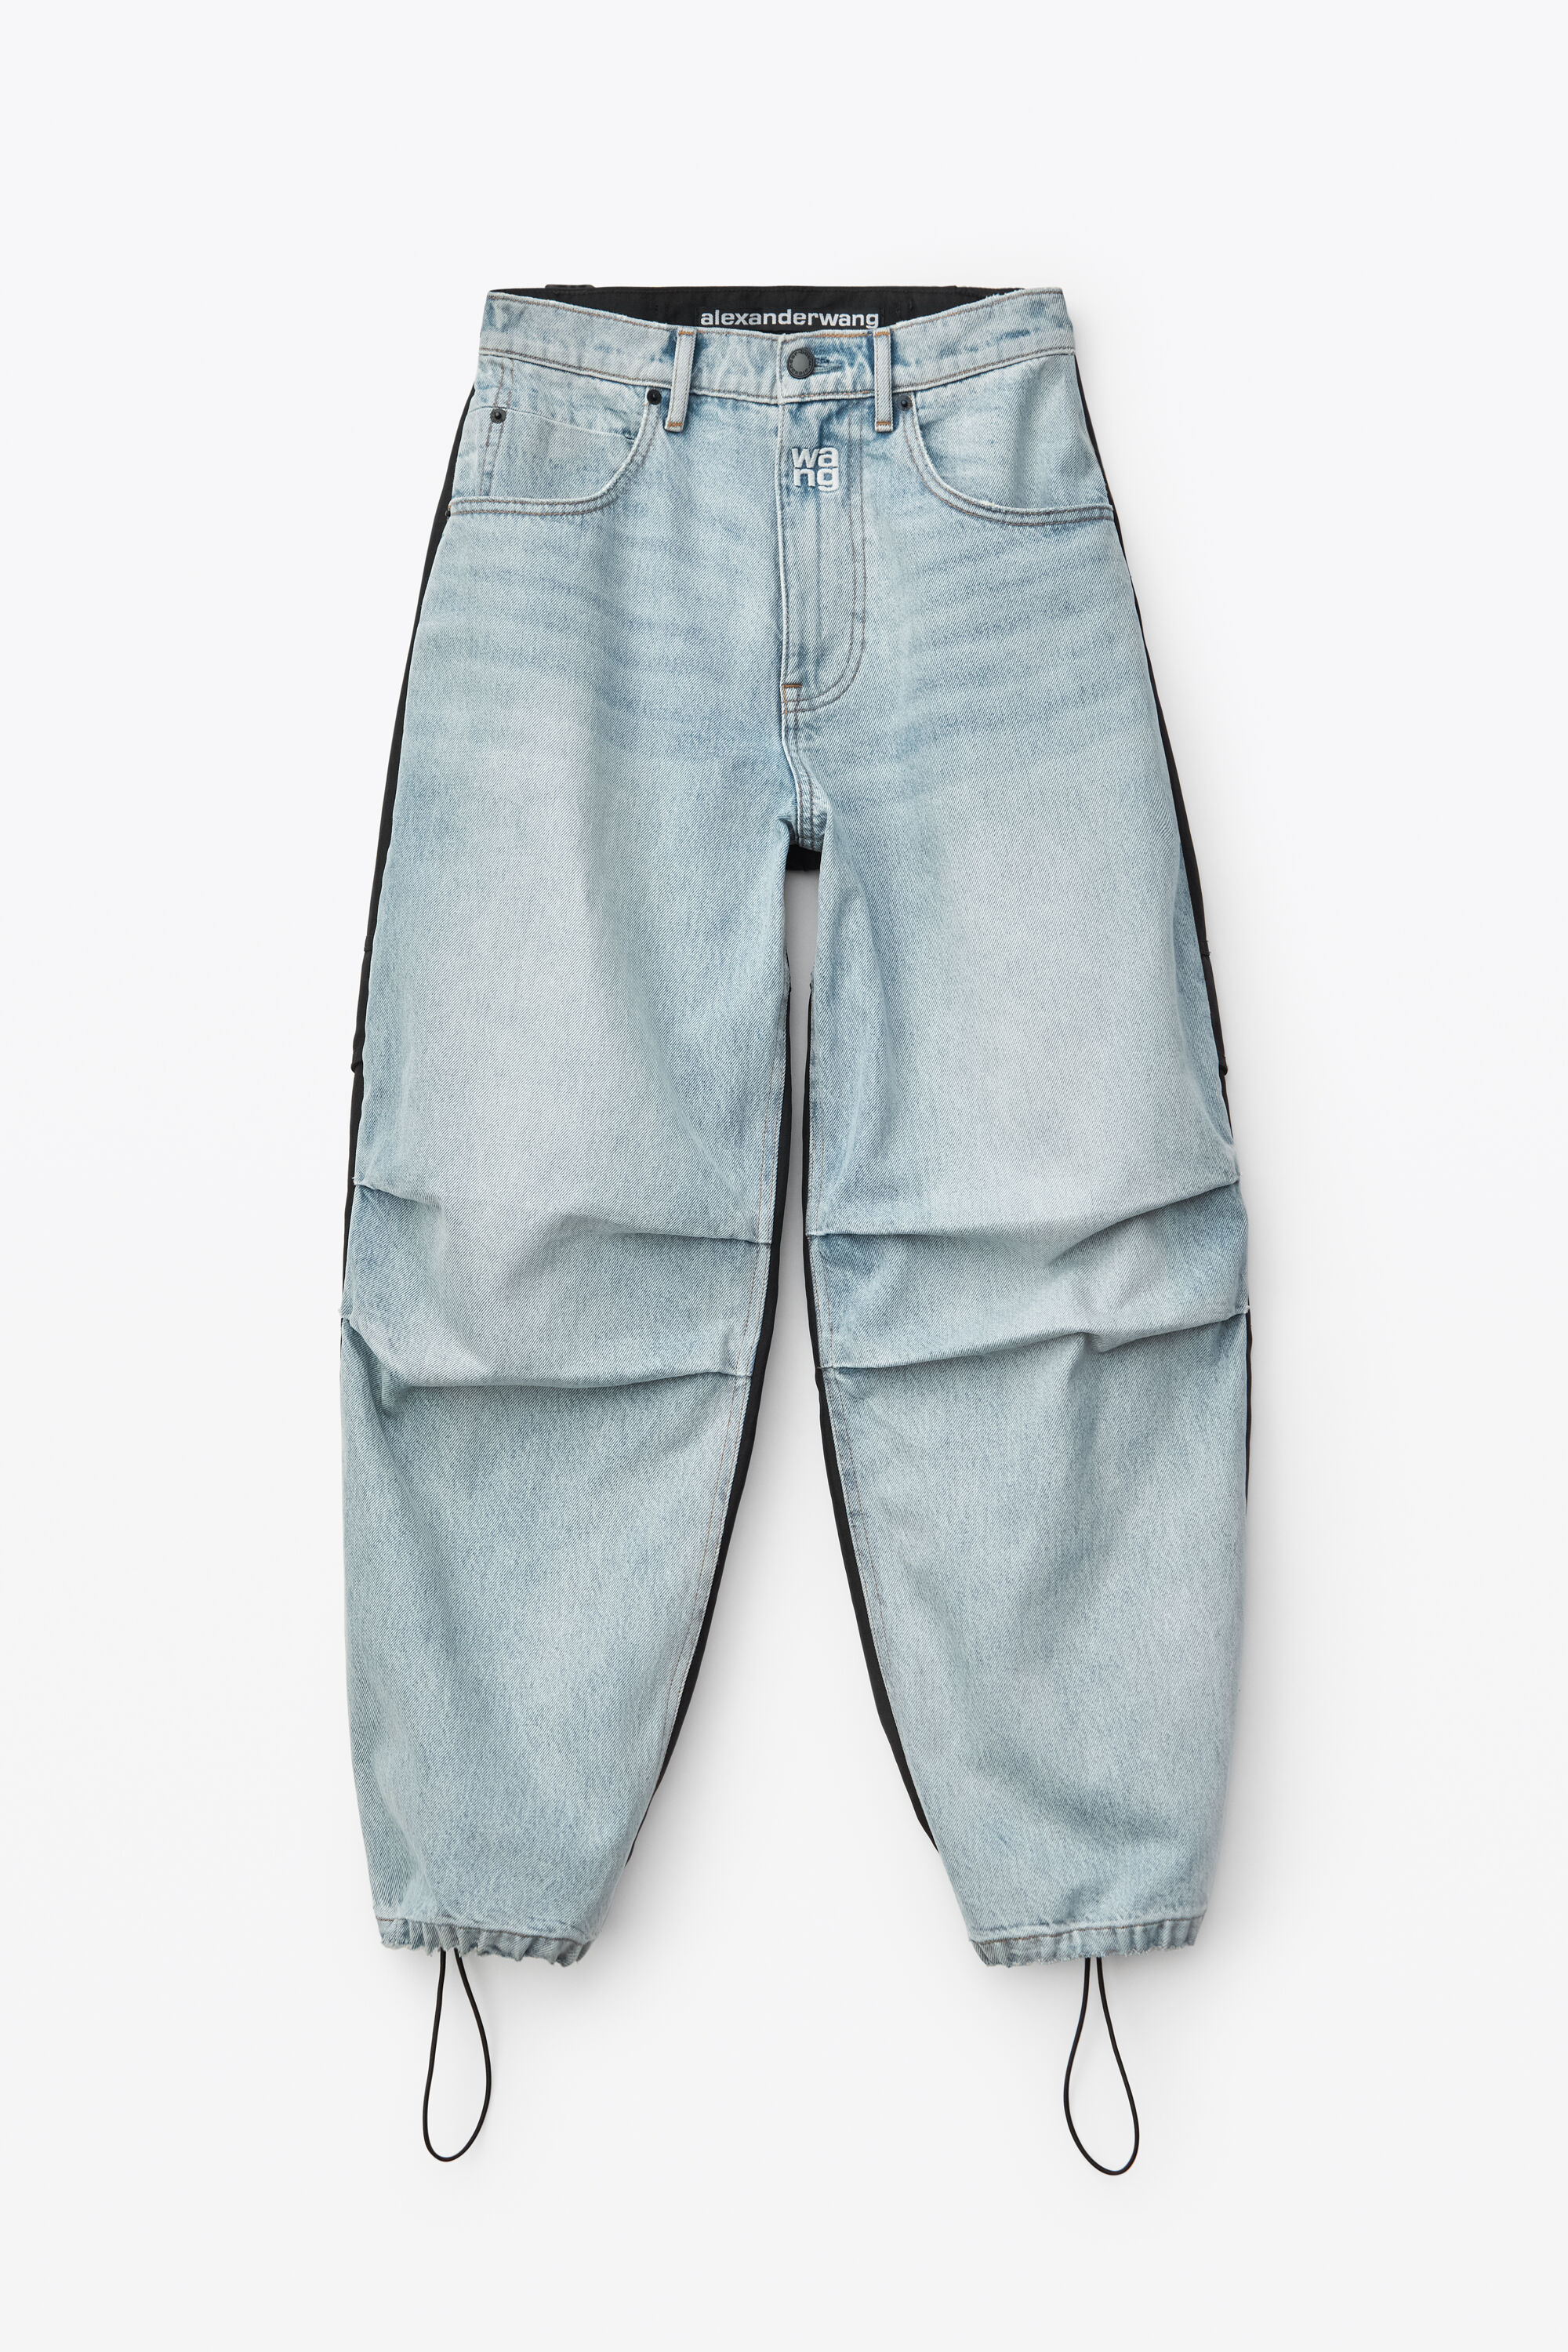 alexander wang jeans